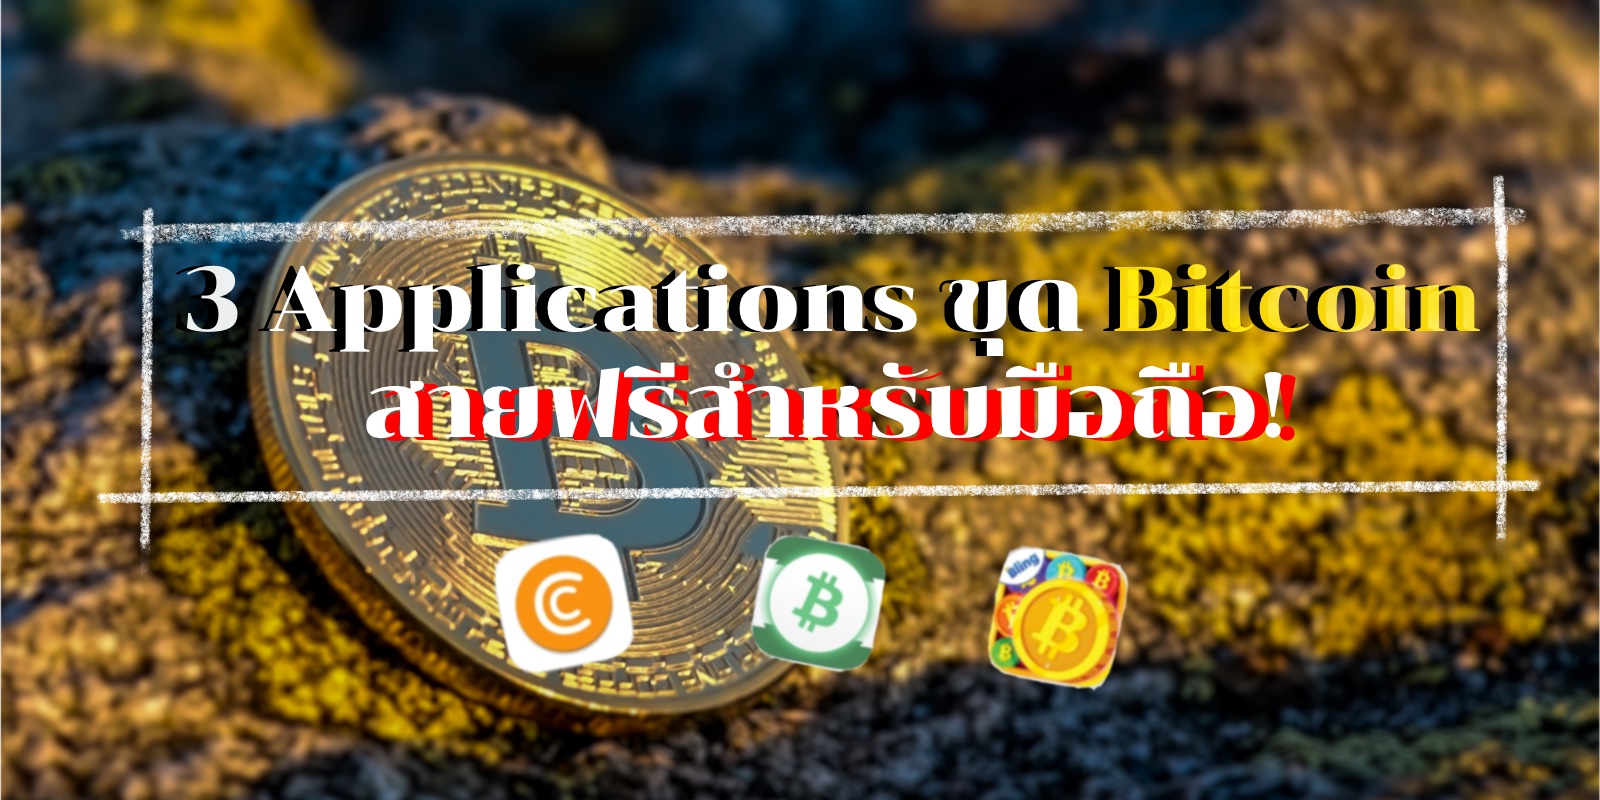 3 Application ขุด Bitcoin สายฟรีสำหรับมือถือ!